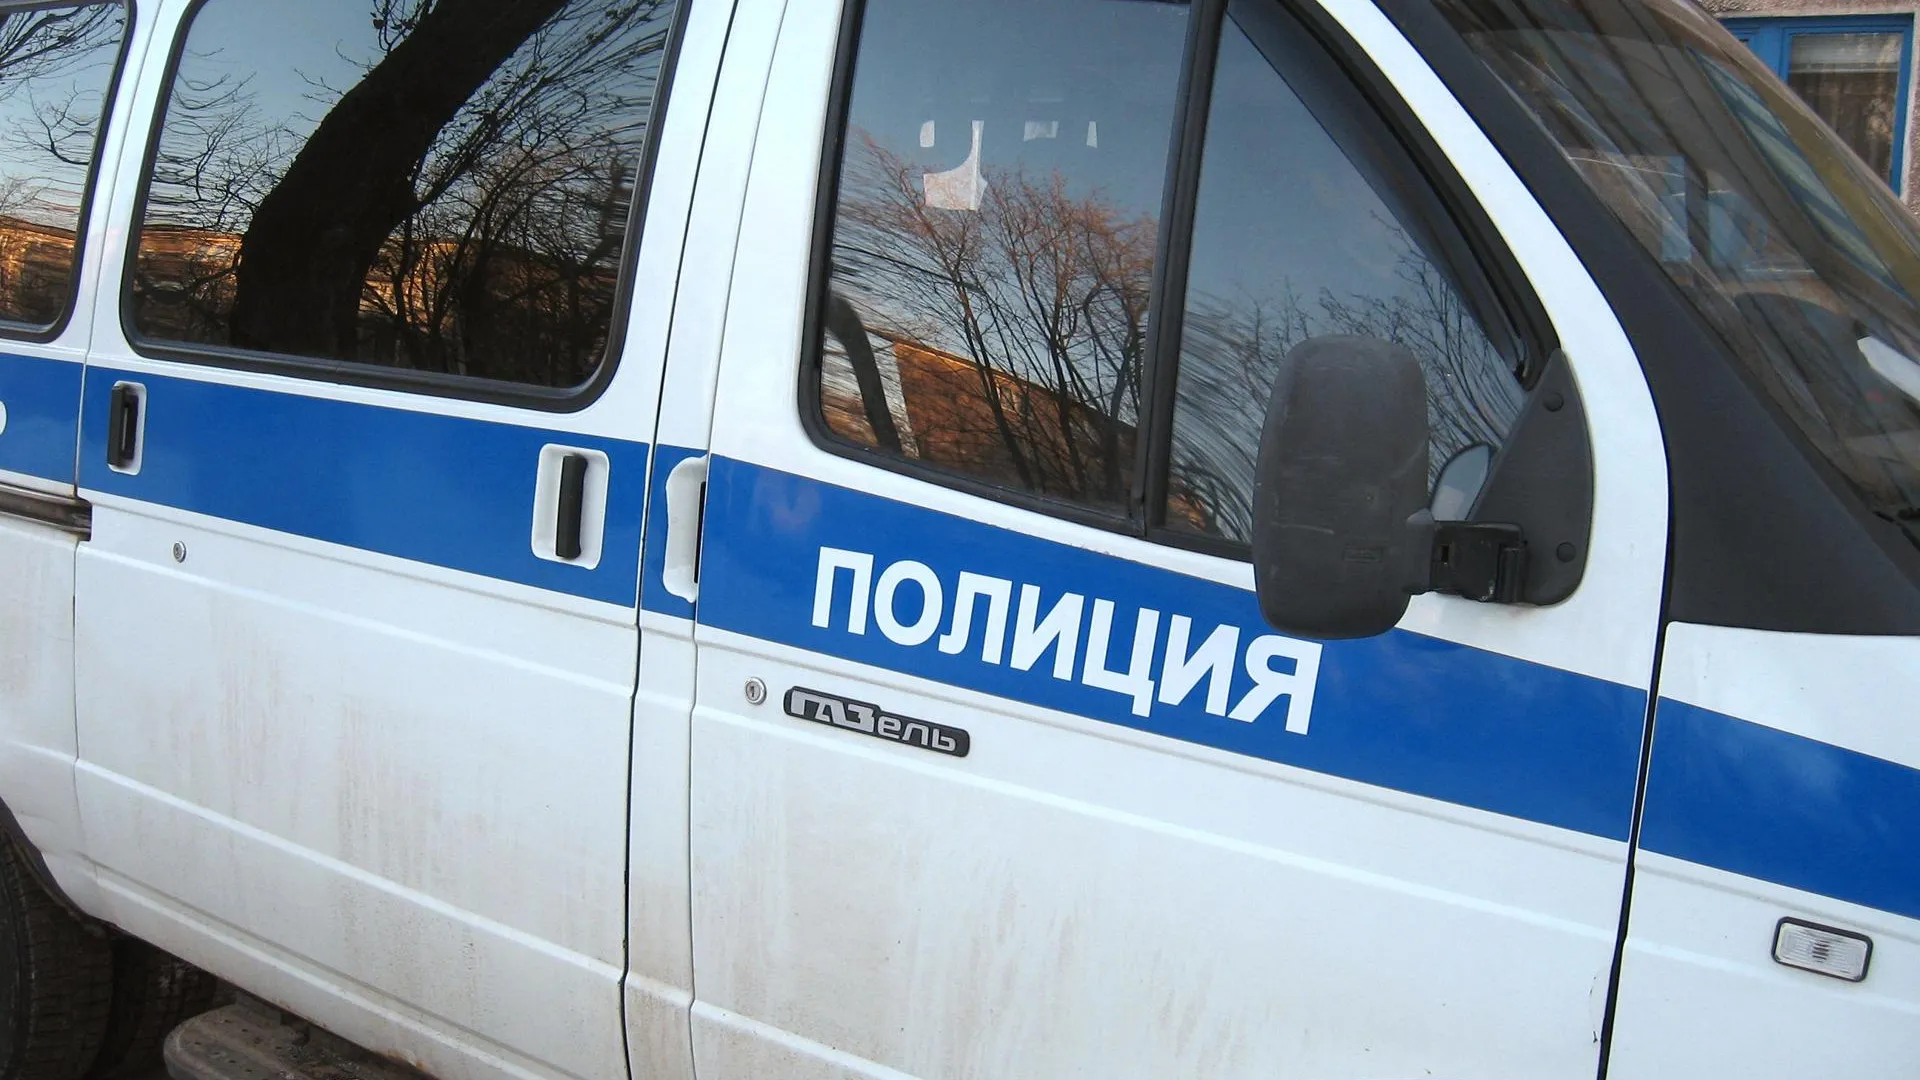 Тело мужчины обнаружили в автомобиле в Краногорском районе — источник